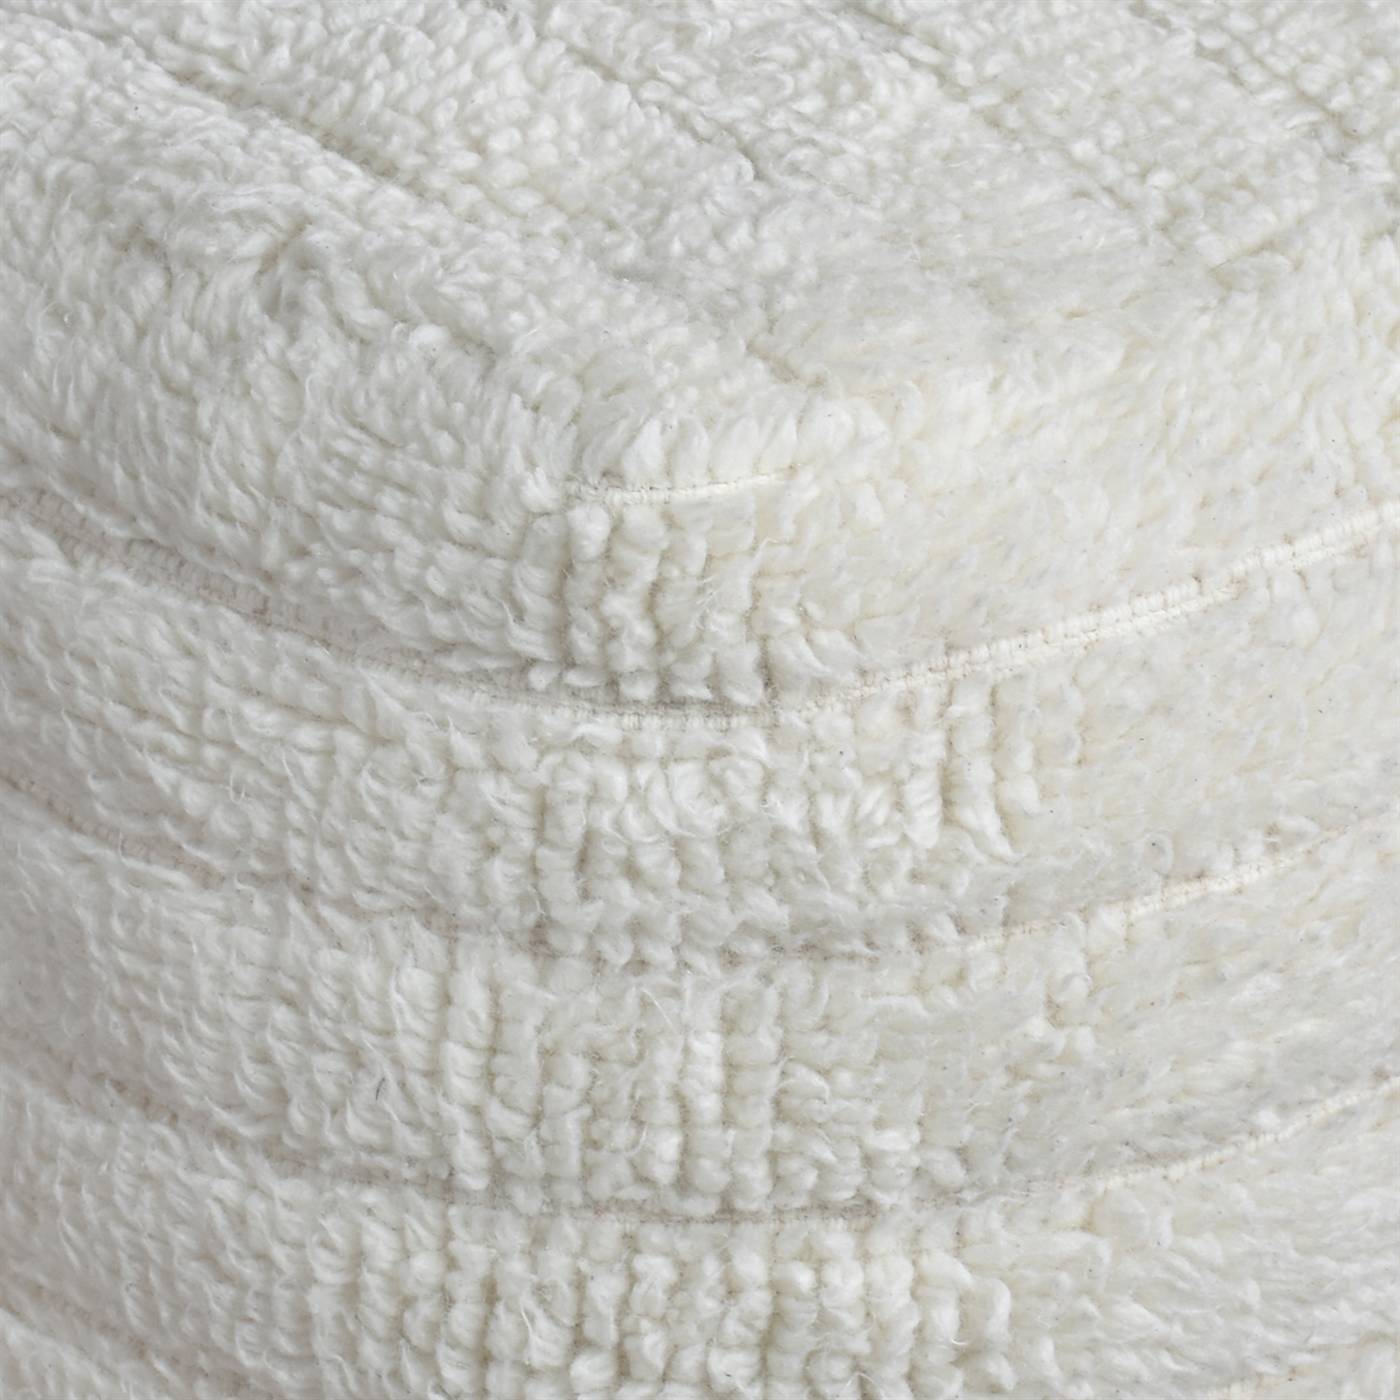 Lumot Pouf, 40x40x40 cm, Natural White, NZ Wool, Hand Woven, Handwoven, All Cut